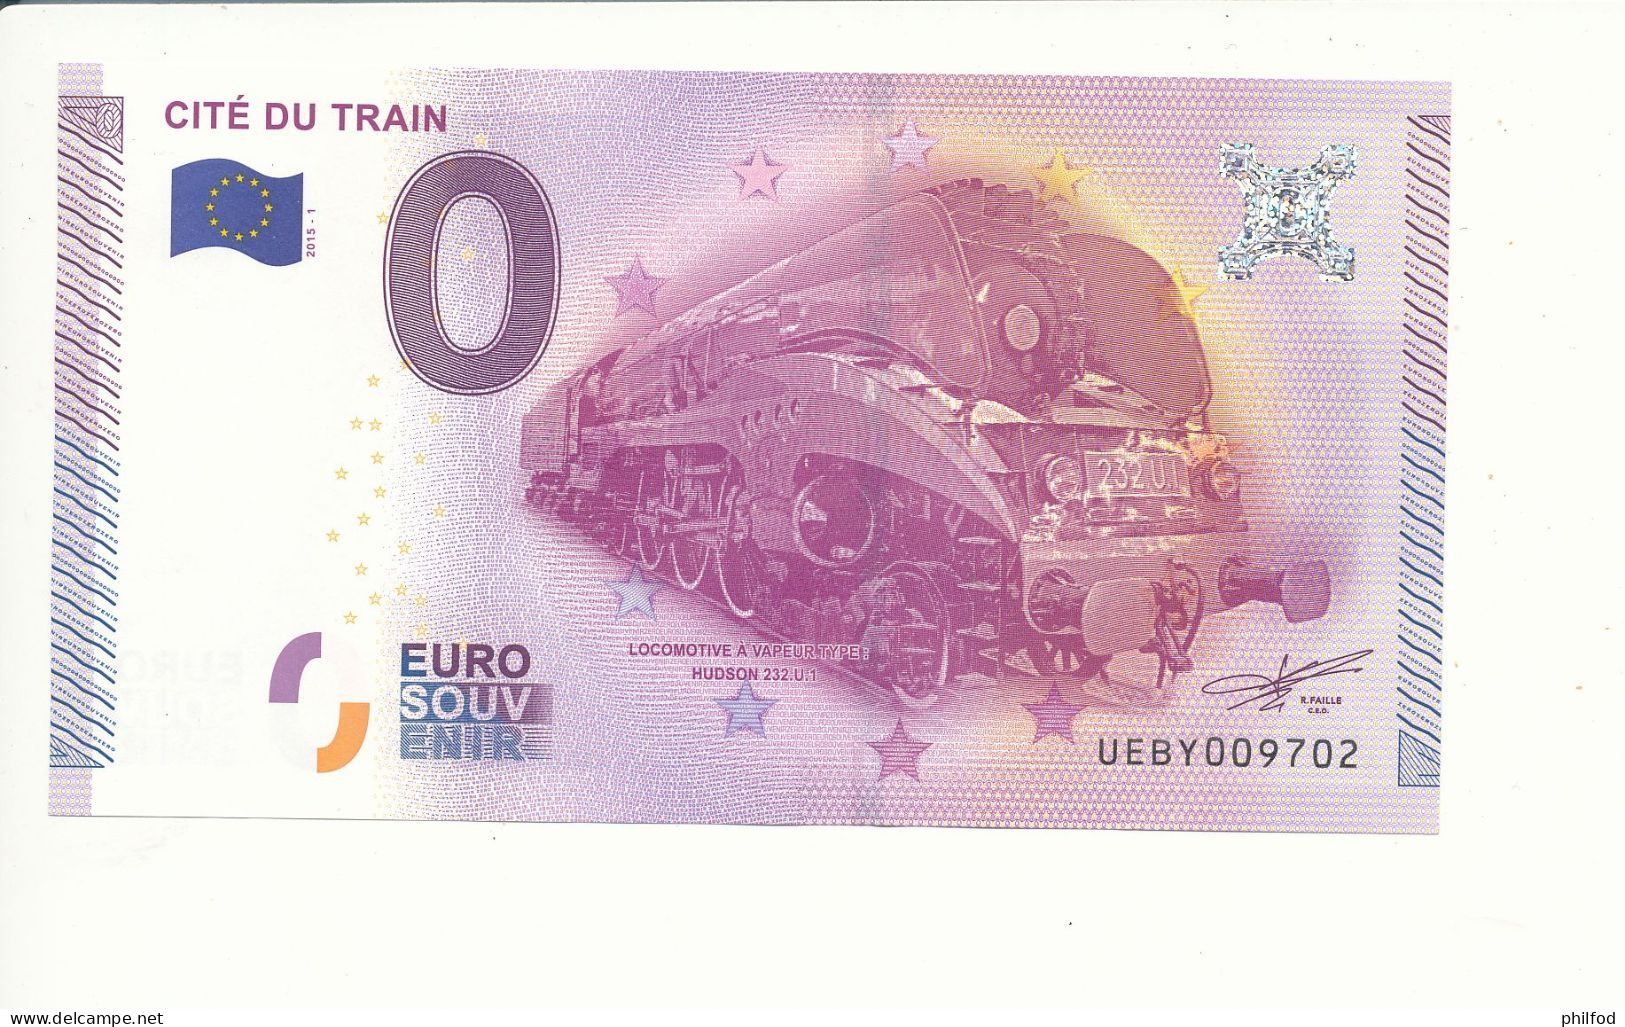 2015-1 - Billet Souvenir - 0 Euro - UEBY -  CITÉ DU TRAIN -  n°9702 - Billet épuisé - Privatentwürfe